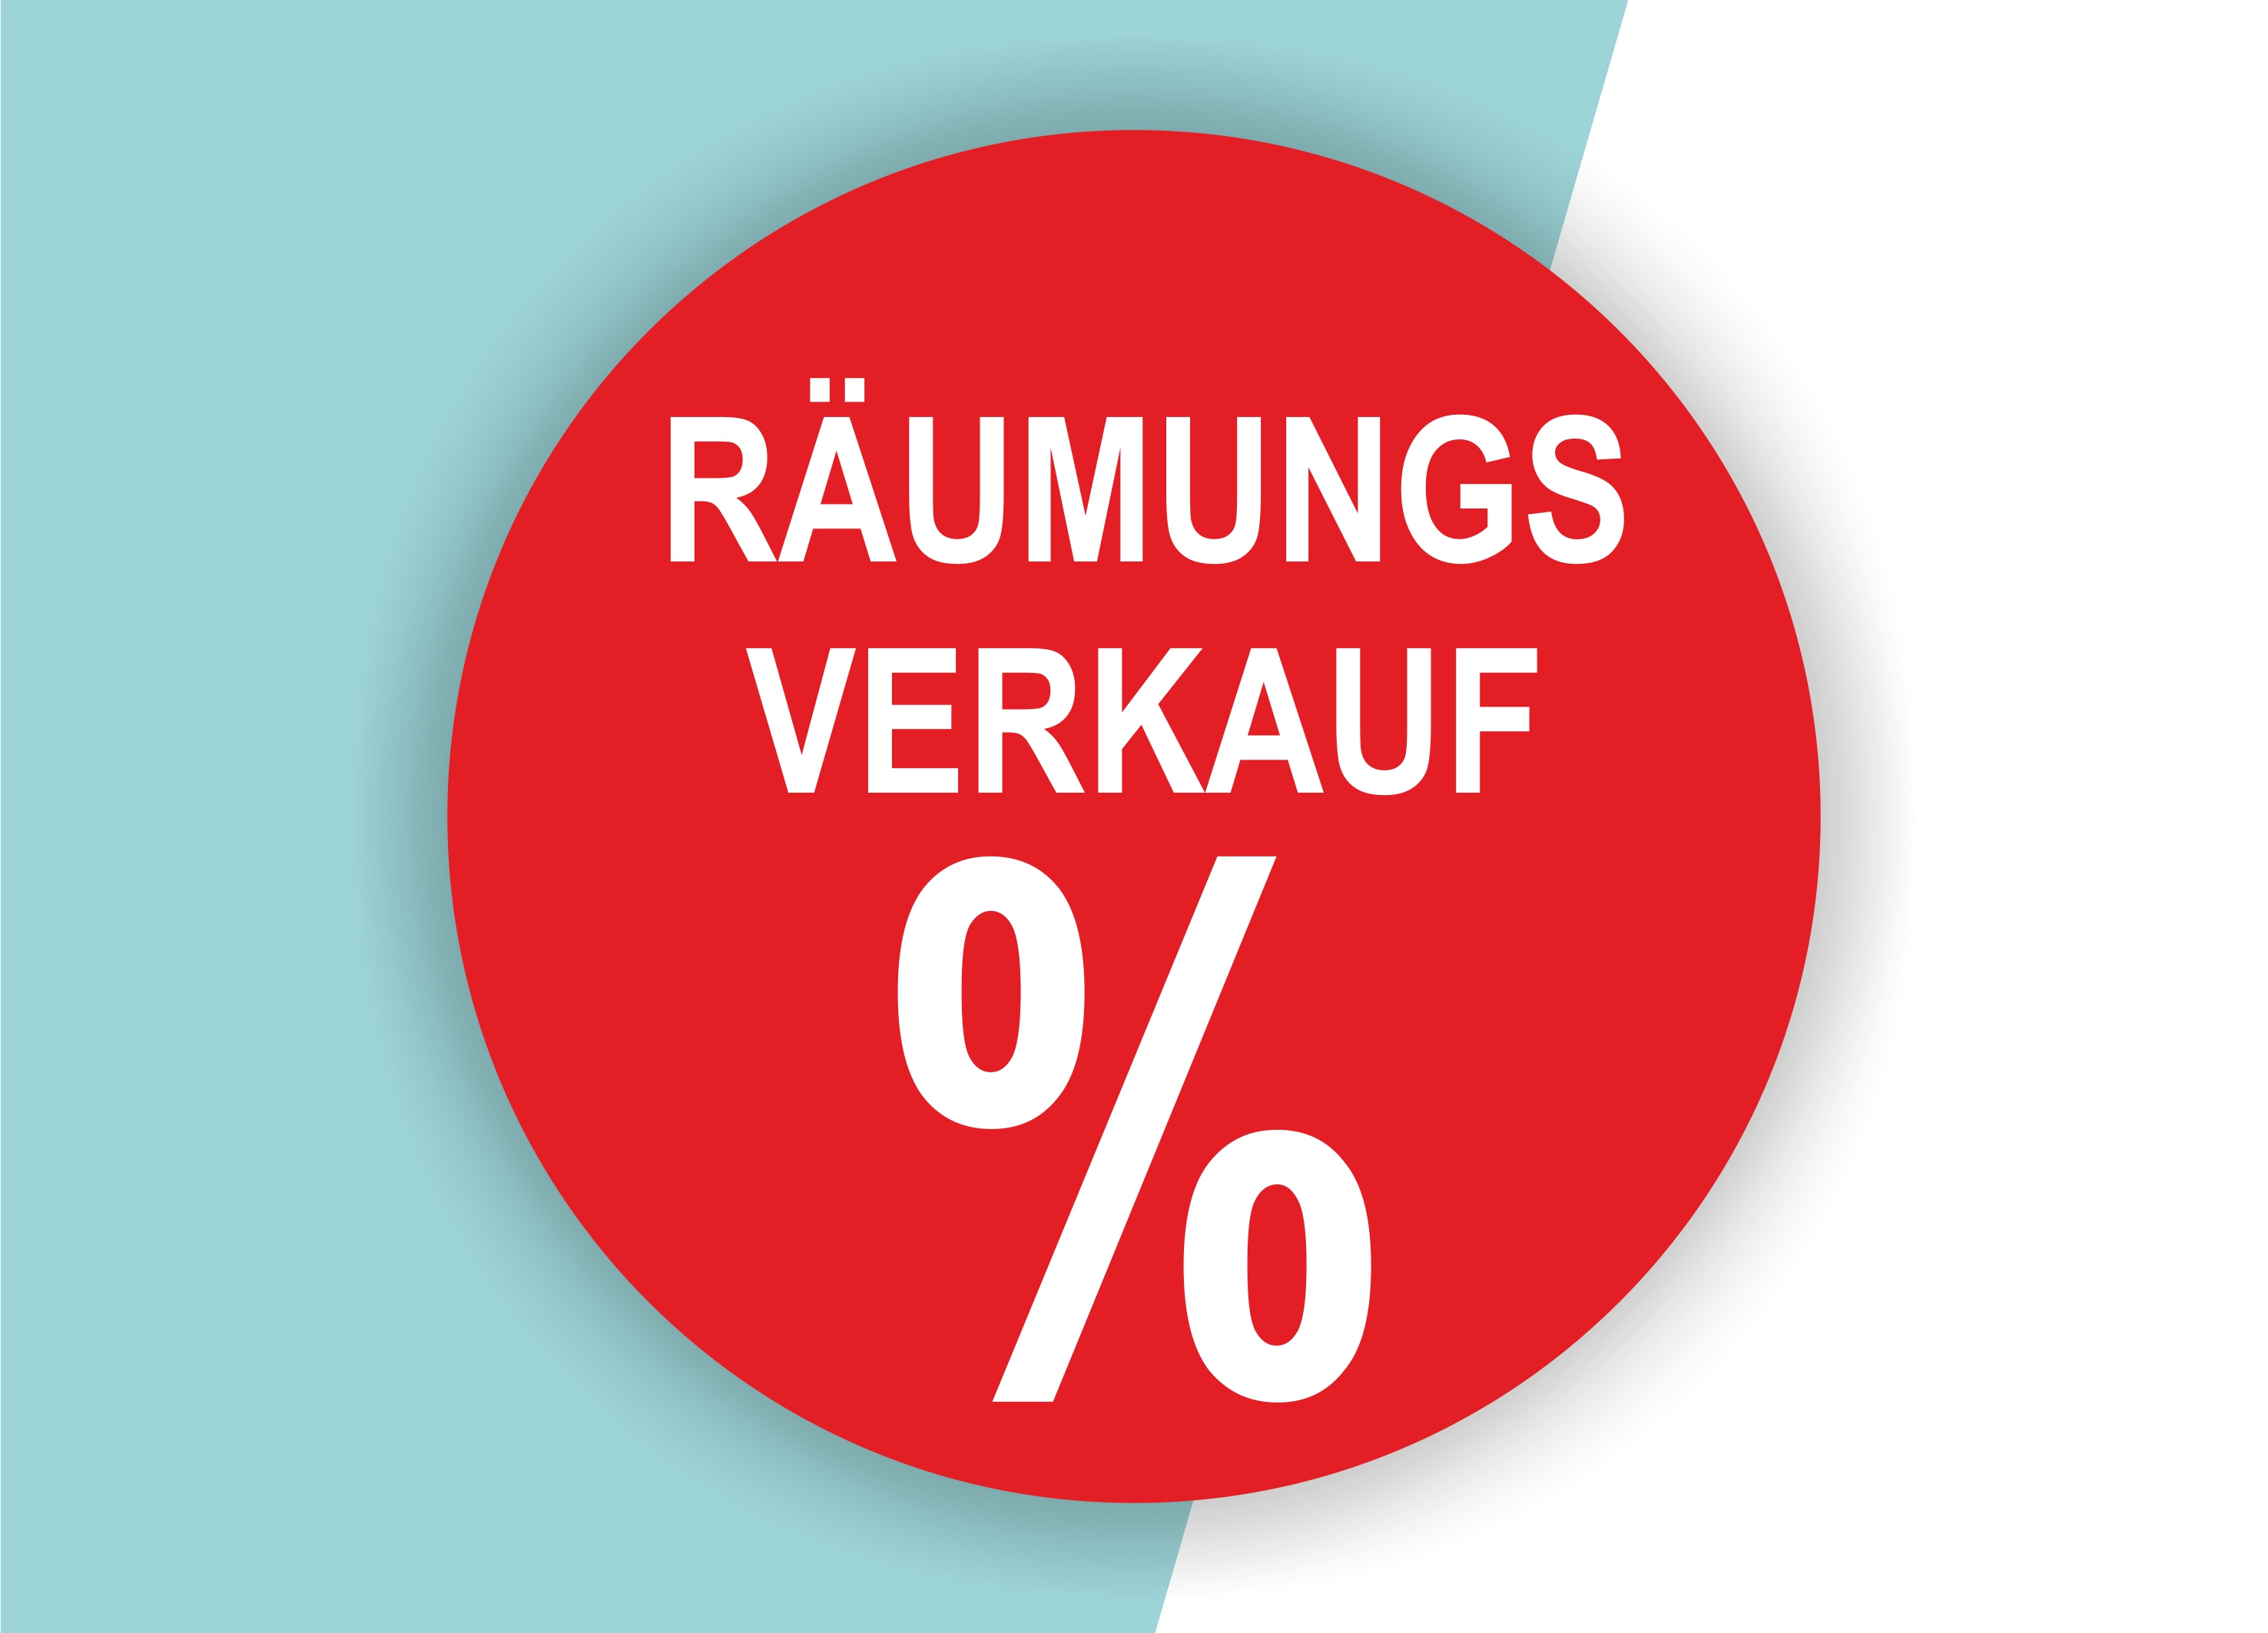 Räumungsverkauf SALE Aufkleber Schaufenster Rabatt Ausverkauf Schlussverkauf SSV WSV % — Farbe: Rot-Weiß